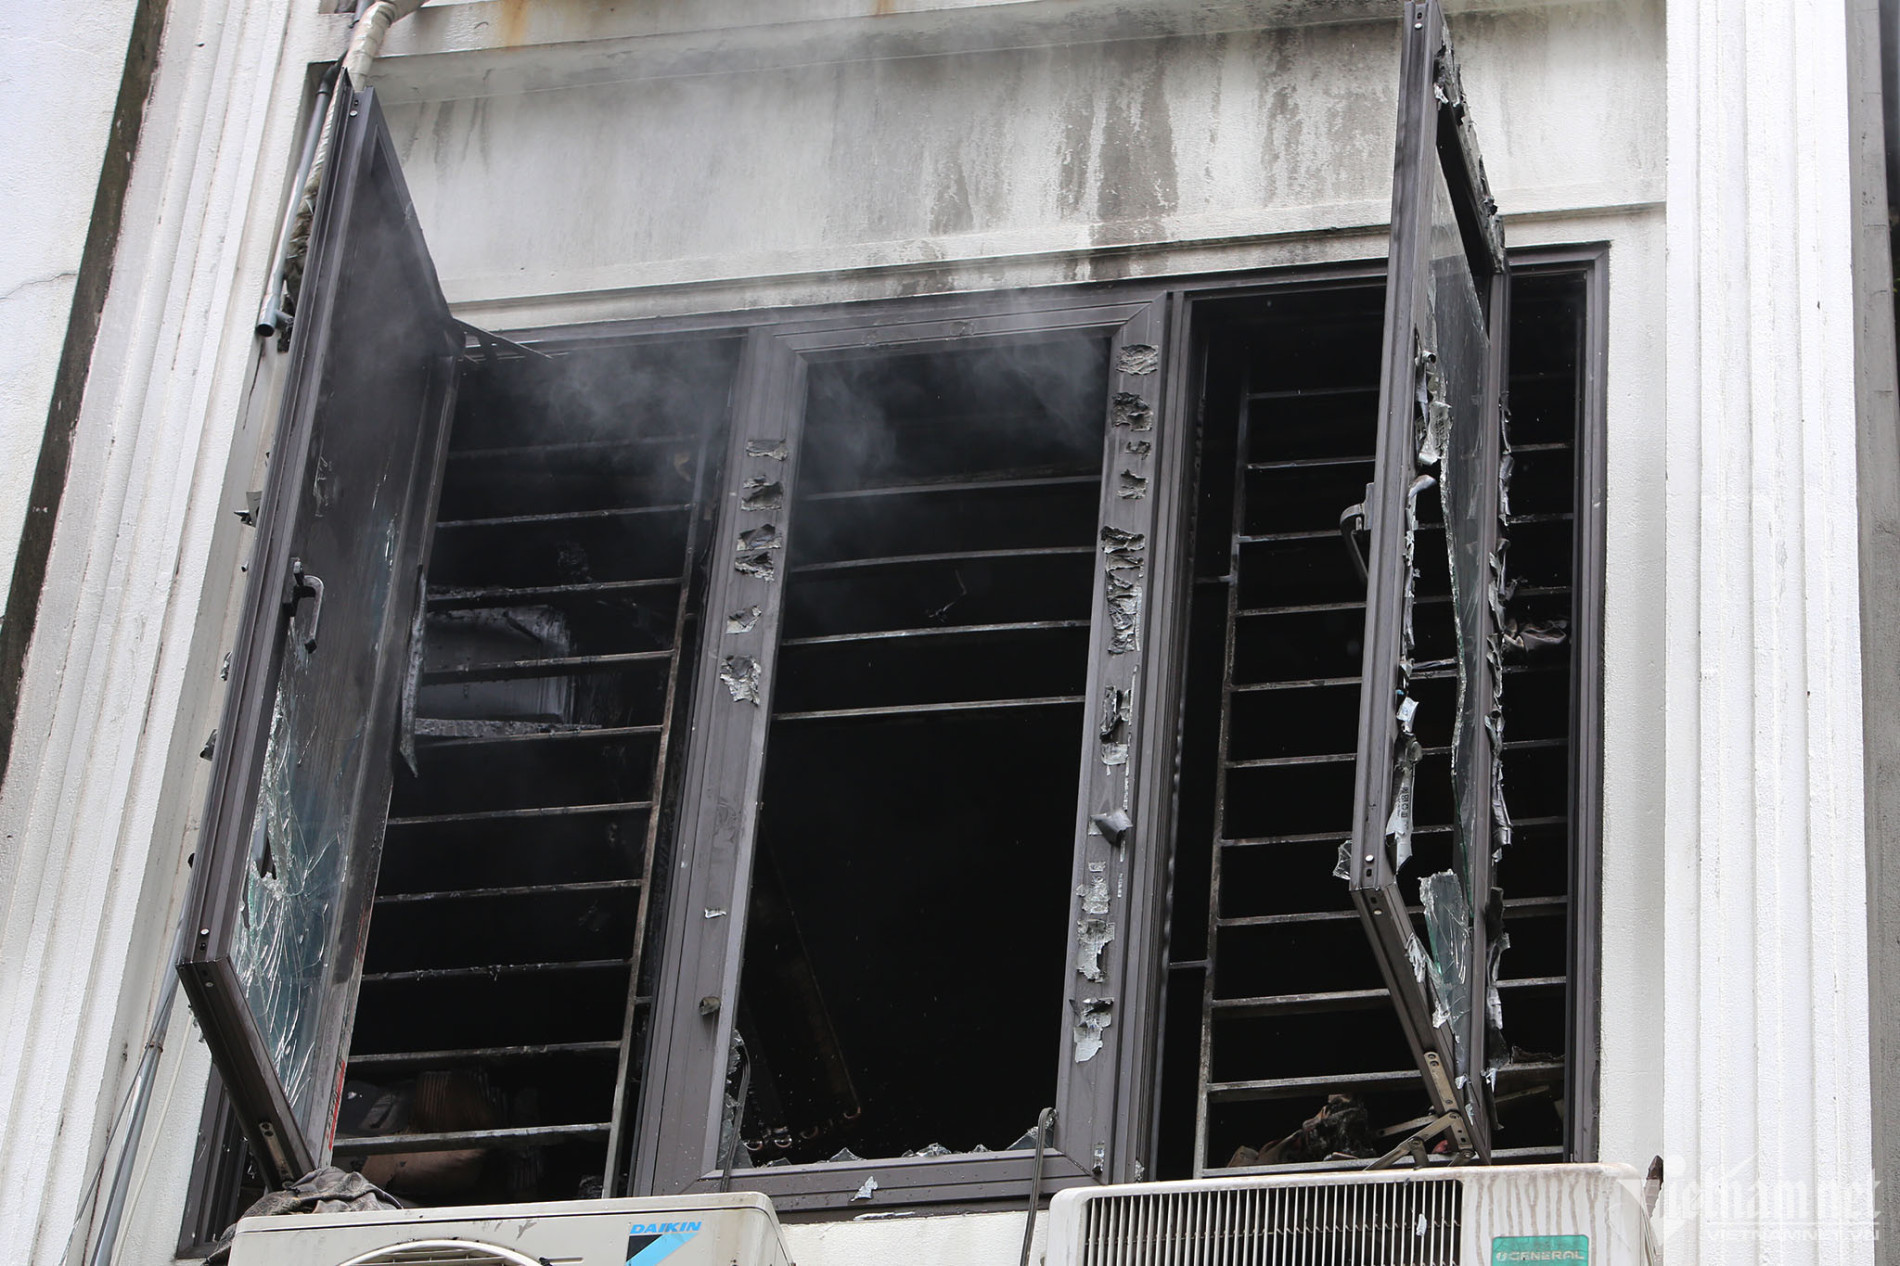 Vụ cháy khiến 3 người chết ở Hà Nội: Người dân tri hô, phá cửa cuốn bất thành